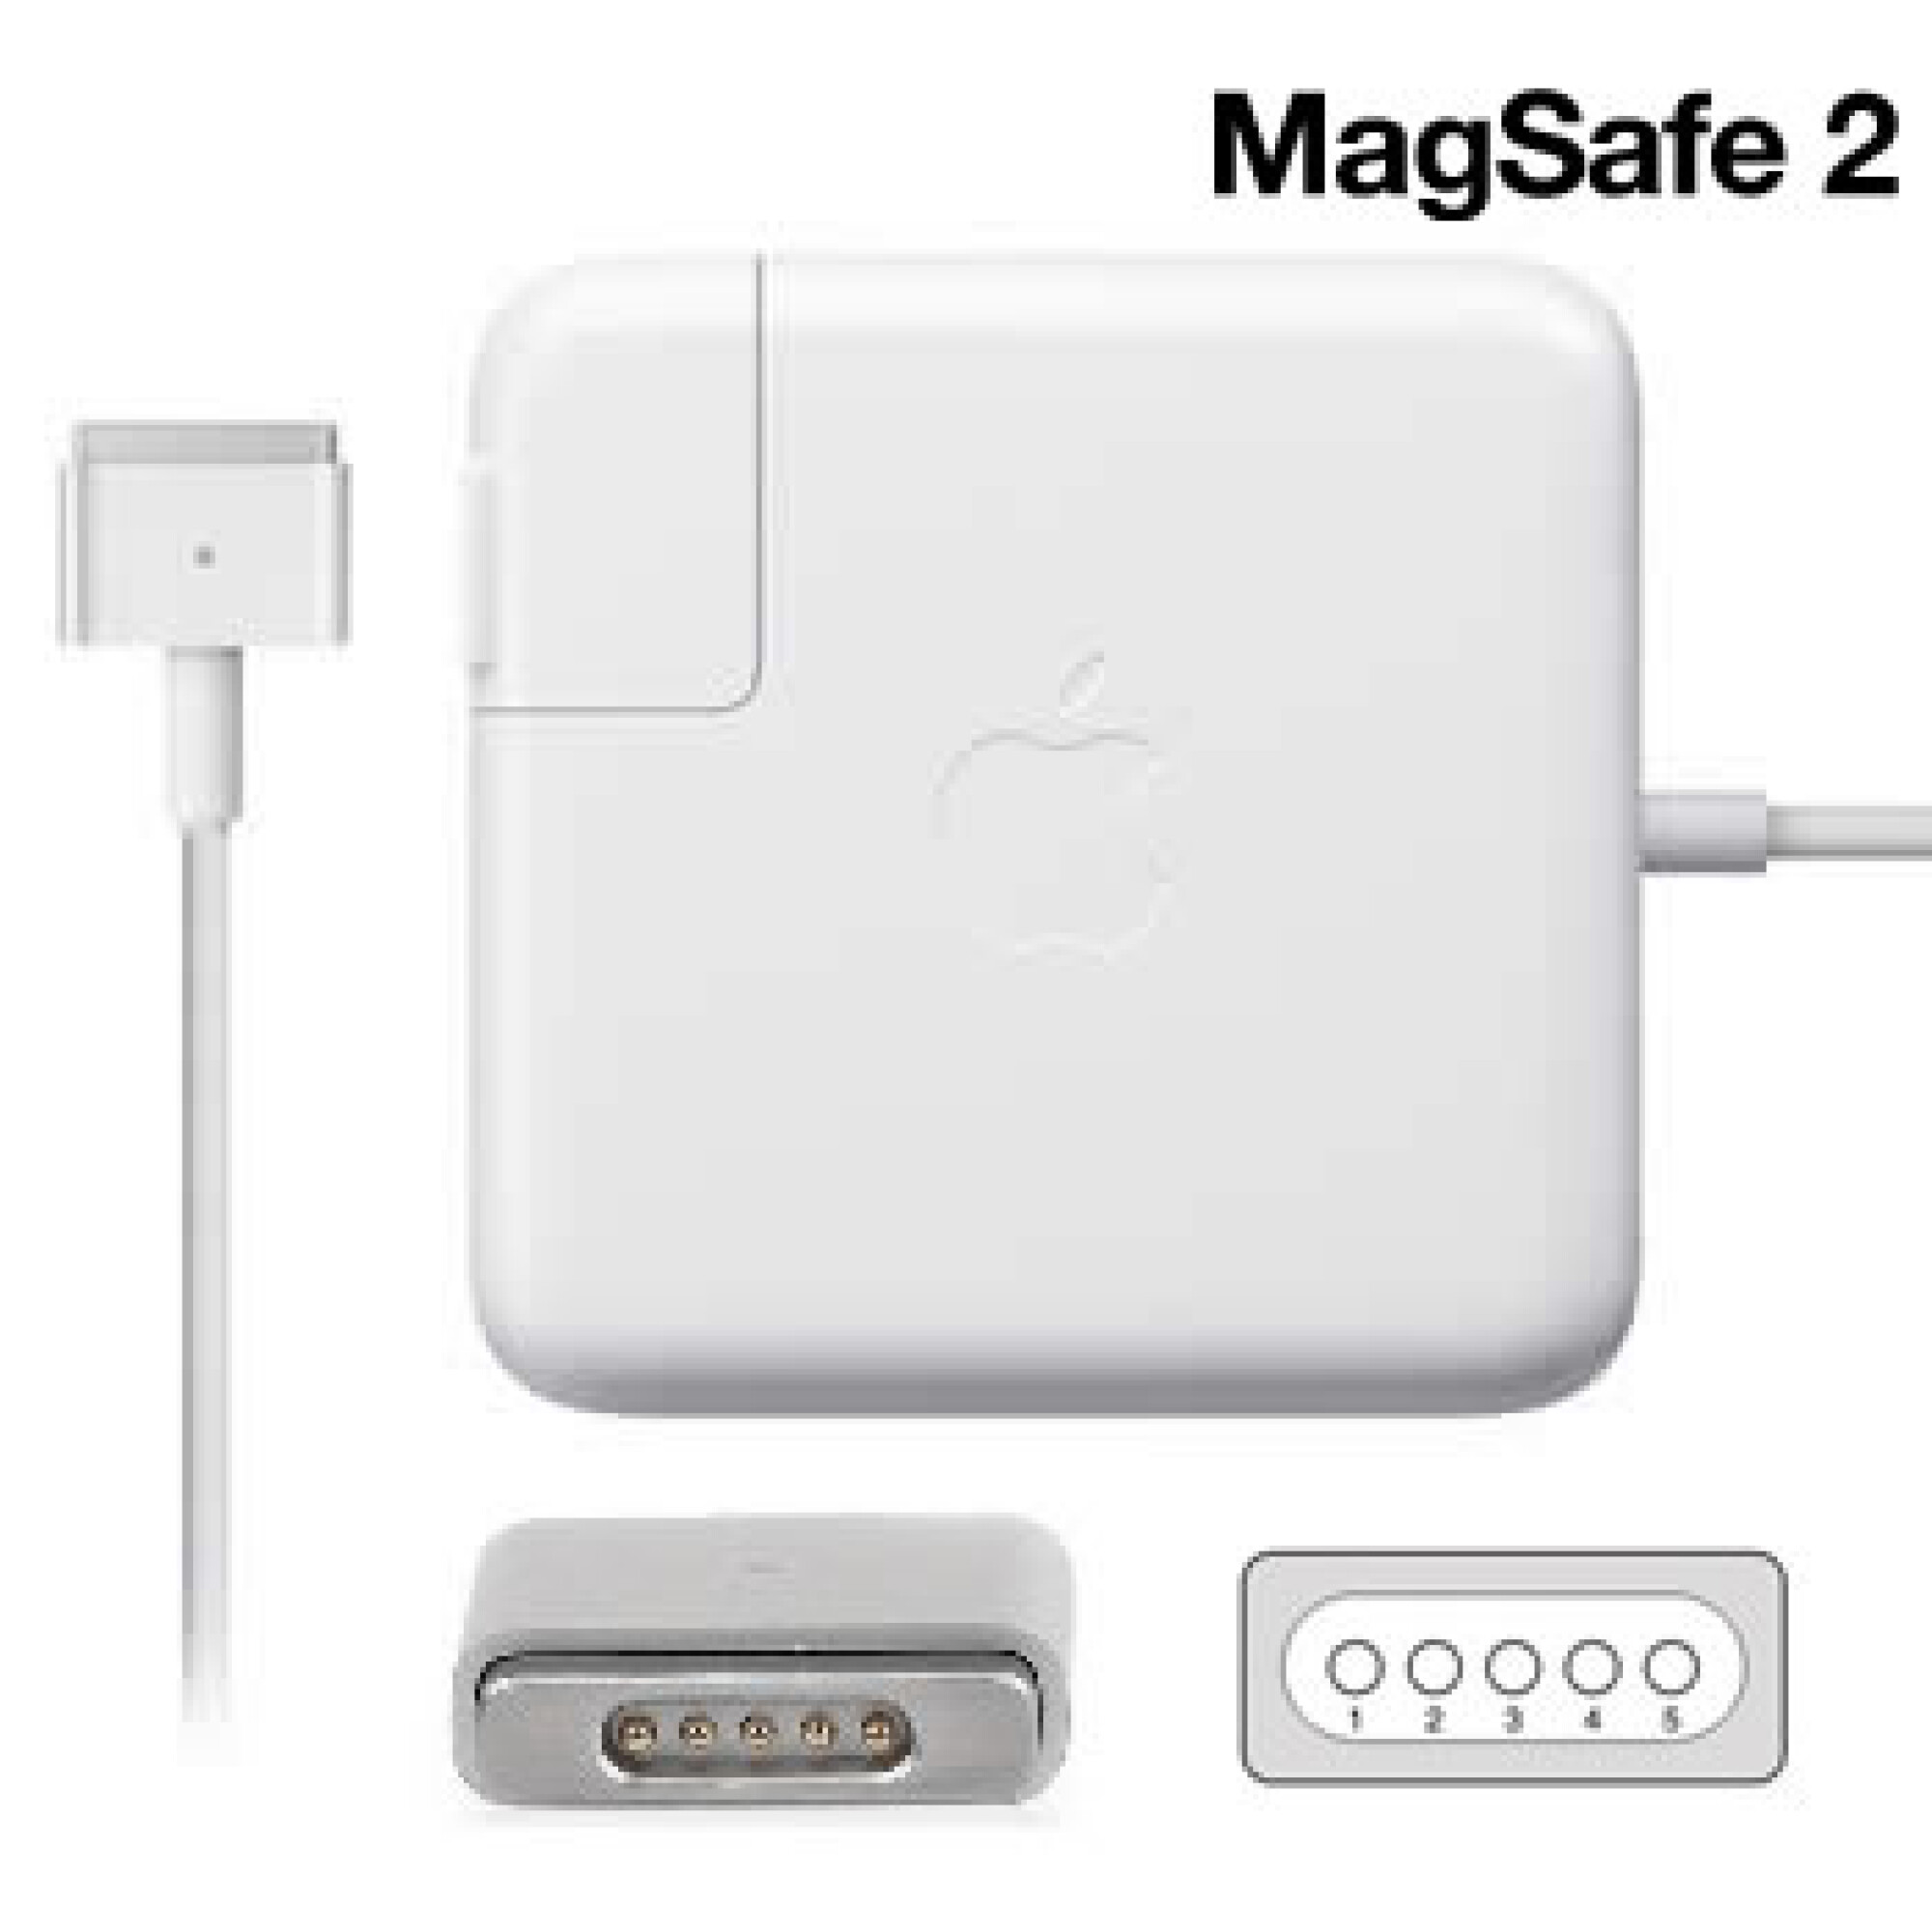 Magsafe аккумулятор купить. MAGSAFE 2 85w оригинал. MAGSAFE 2 60w оригинал. Apple MACBOOK MAGSAFE 2. Беспроводная зарядка Apple MAGSAFE.